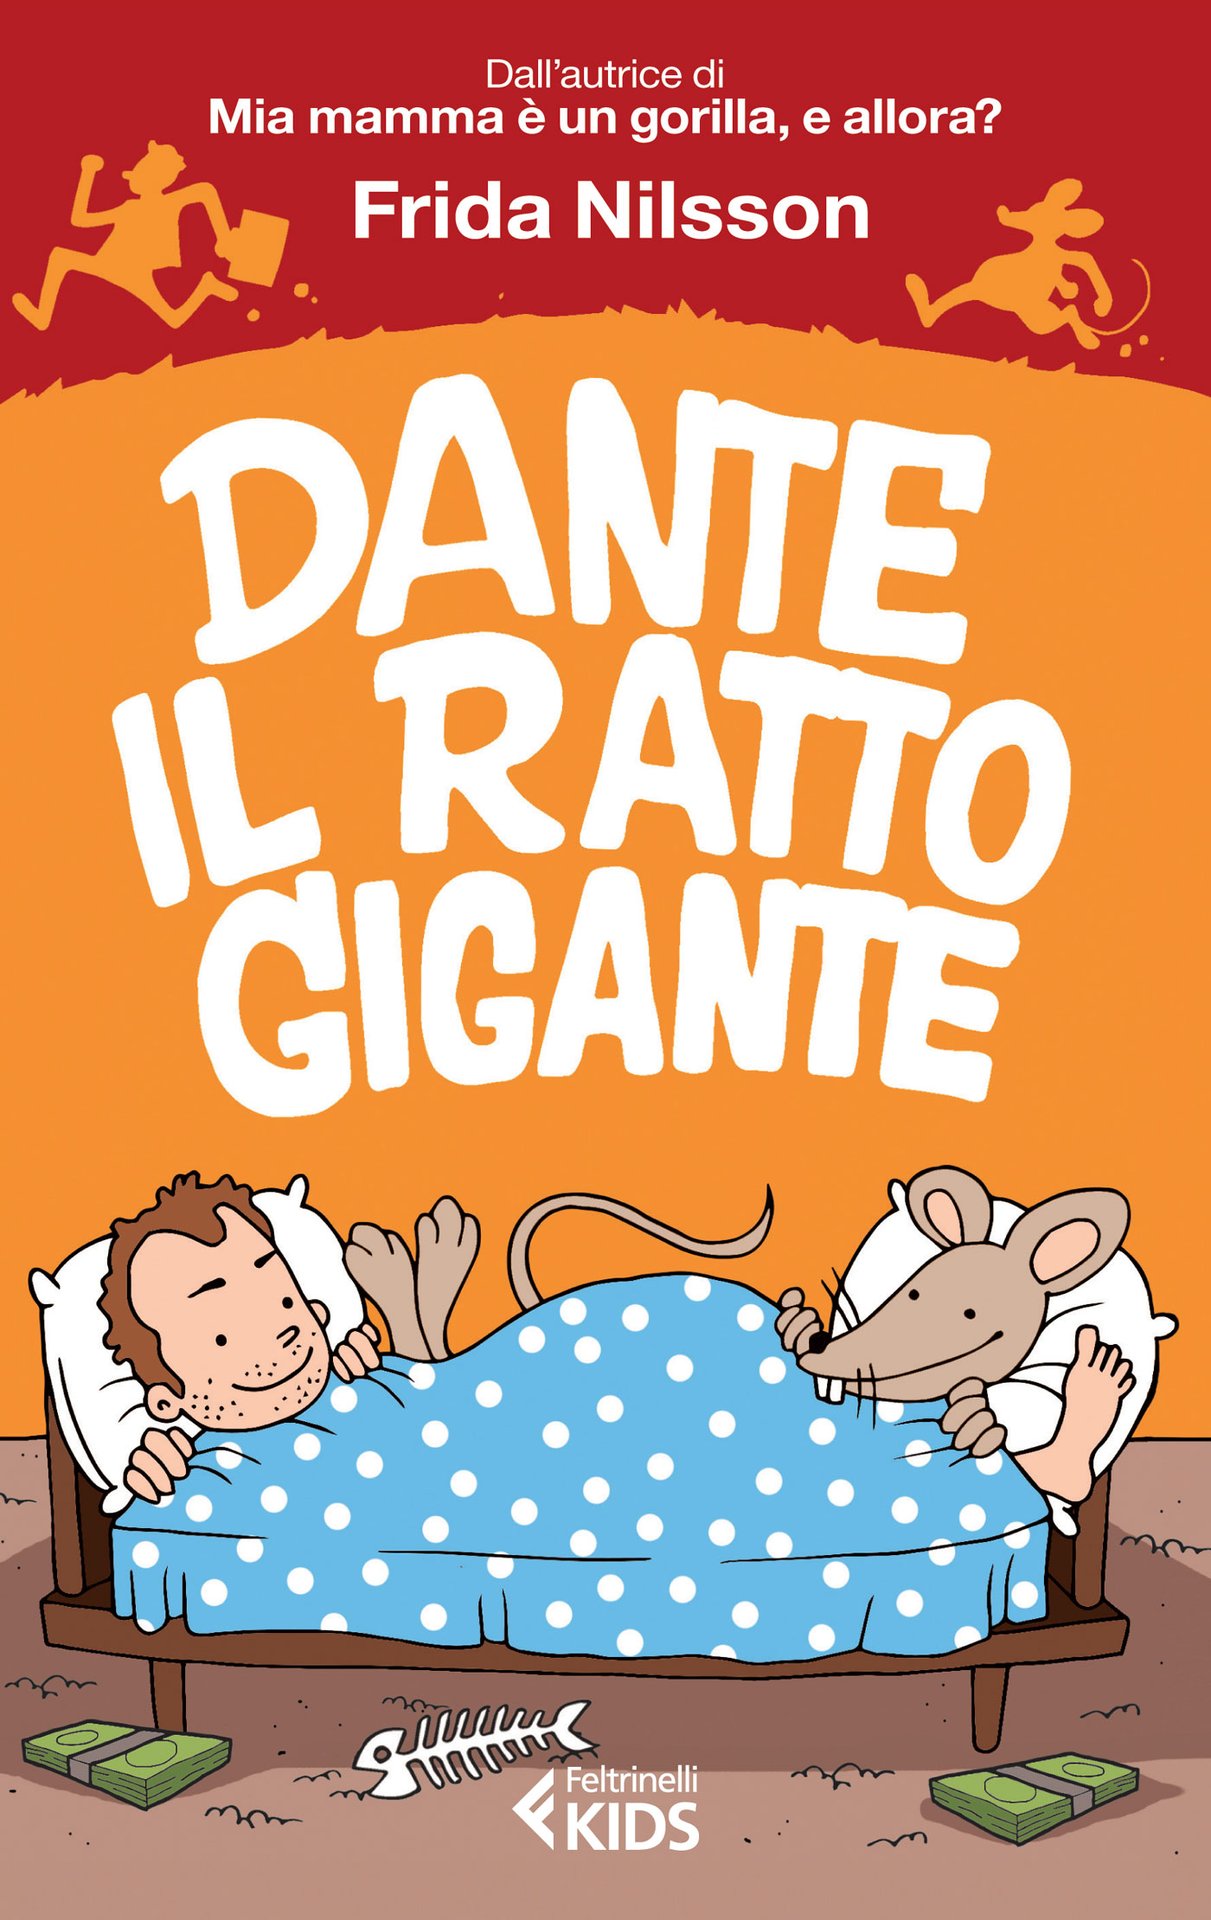 Dante, il ratto gigante